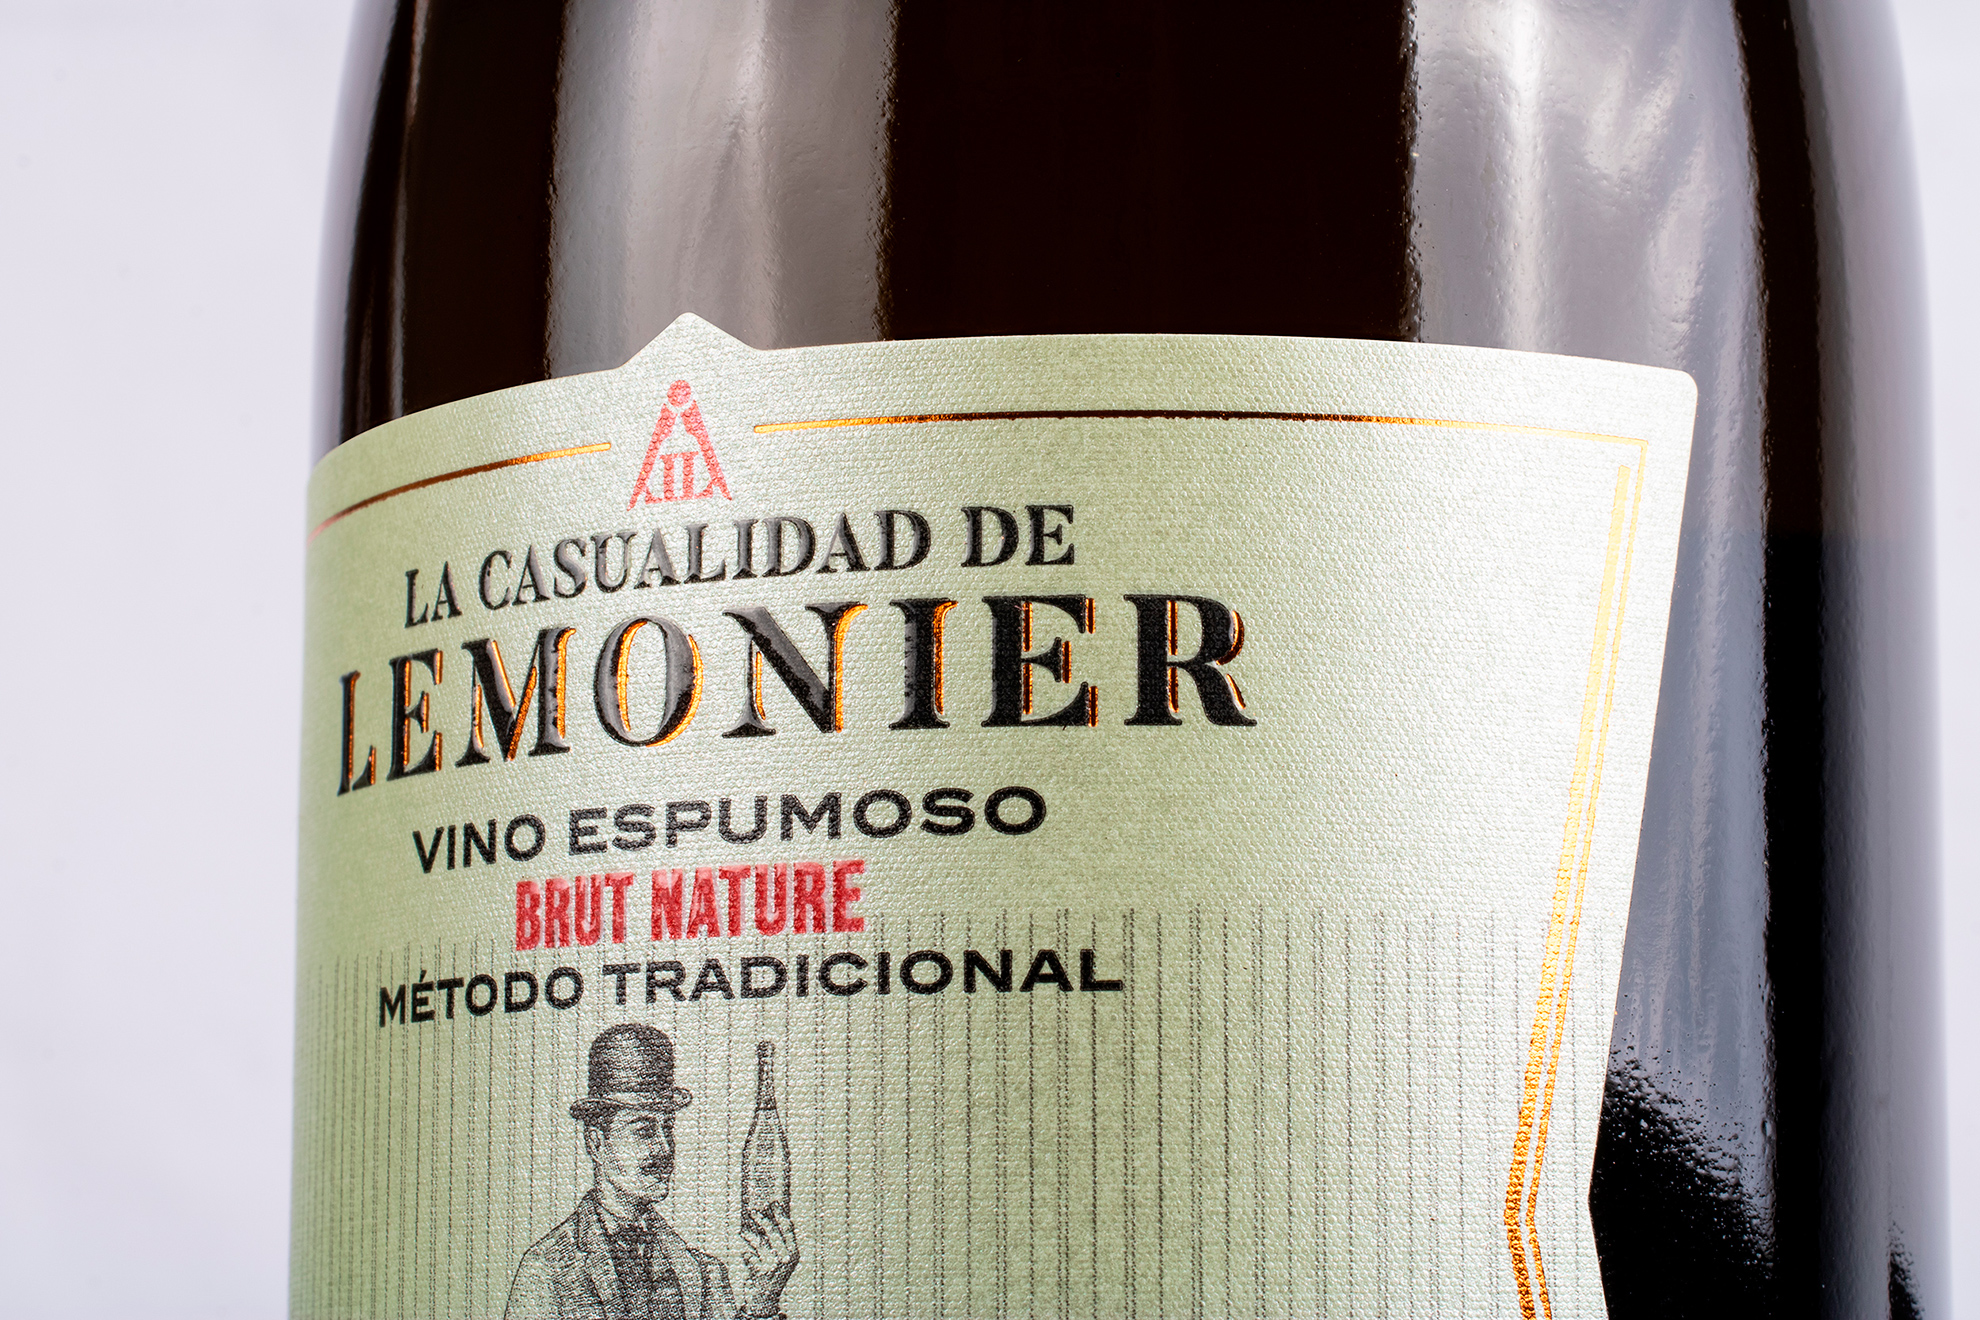 La Casualidad de Lemonier. Diseño de etiqueta para envase de vino espumoso de Puente Genil.